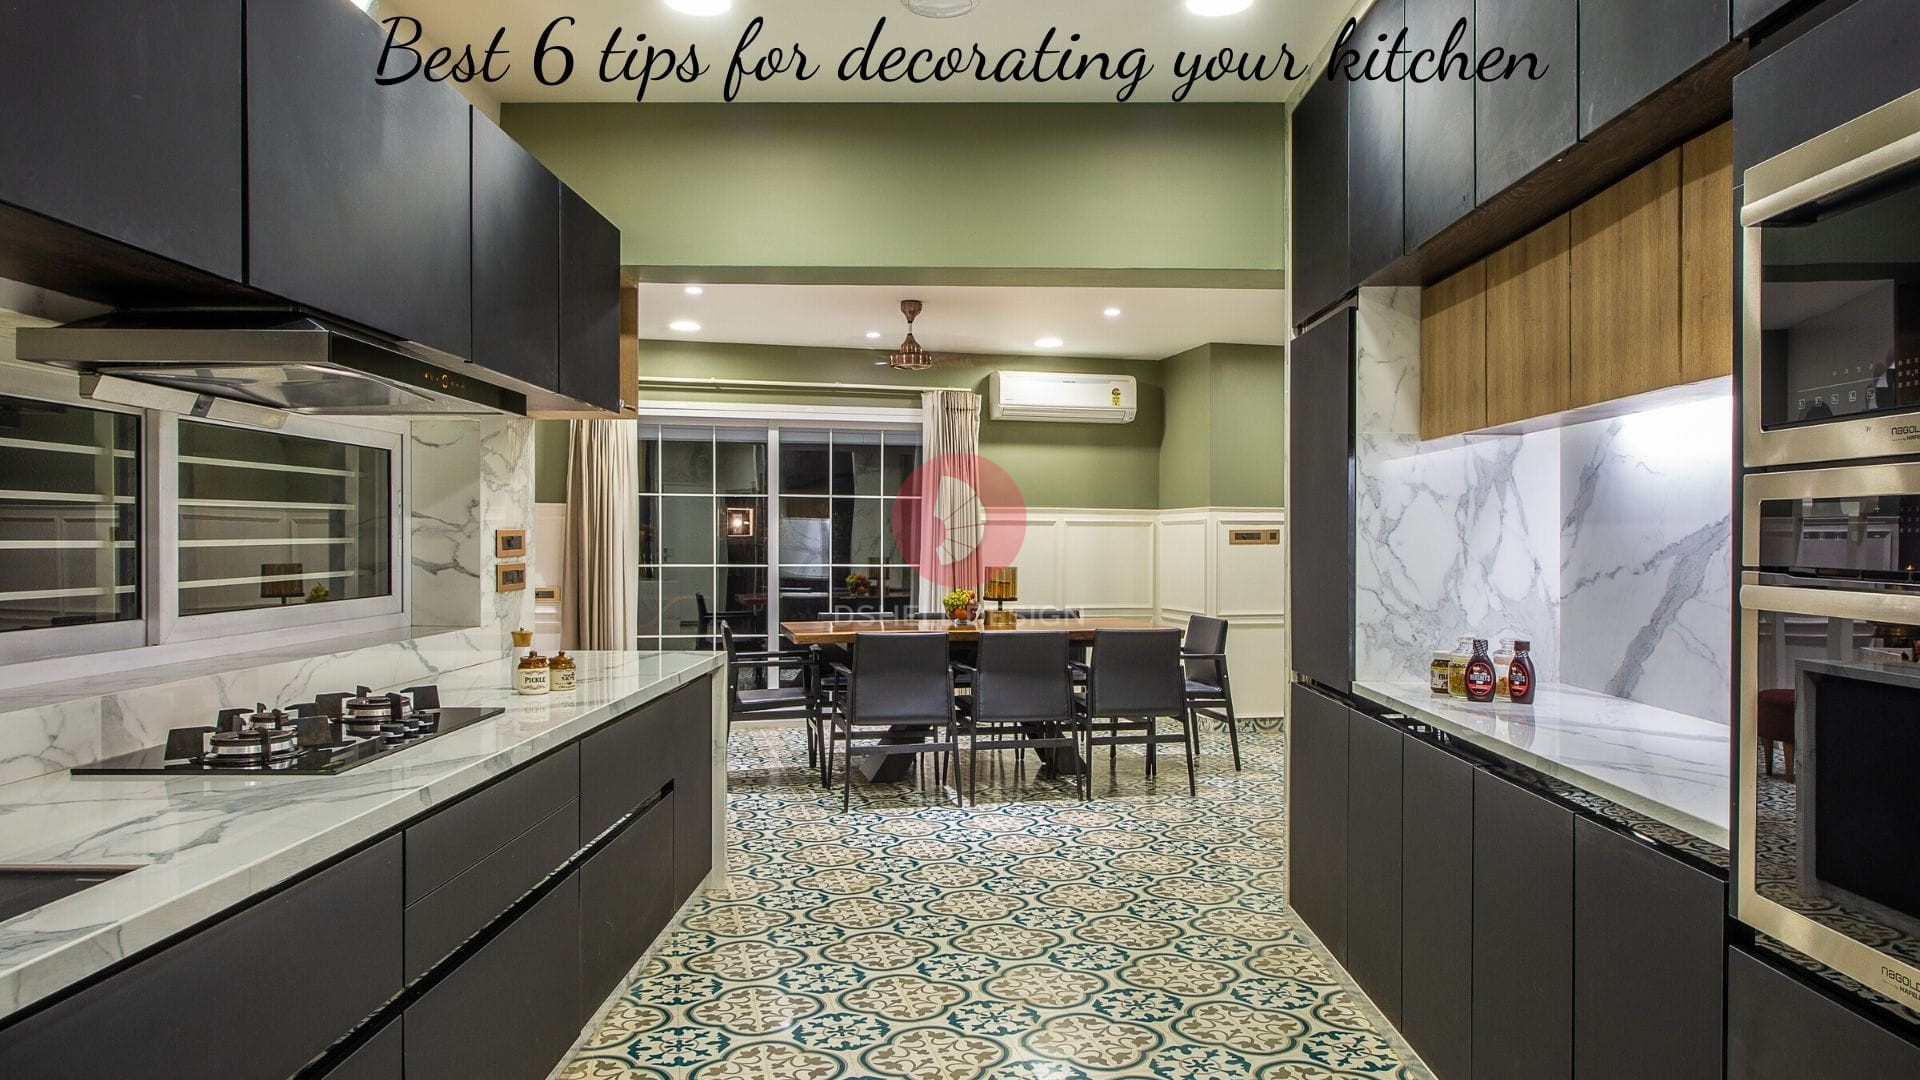 Best kitchen decoration ideas